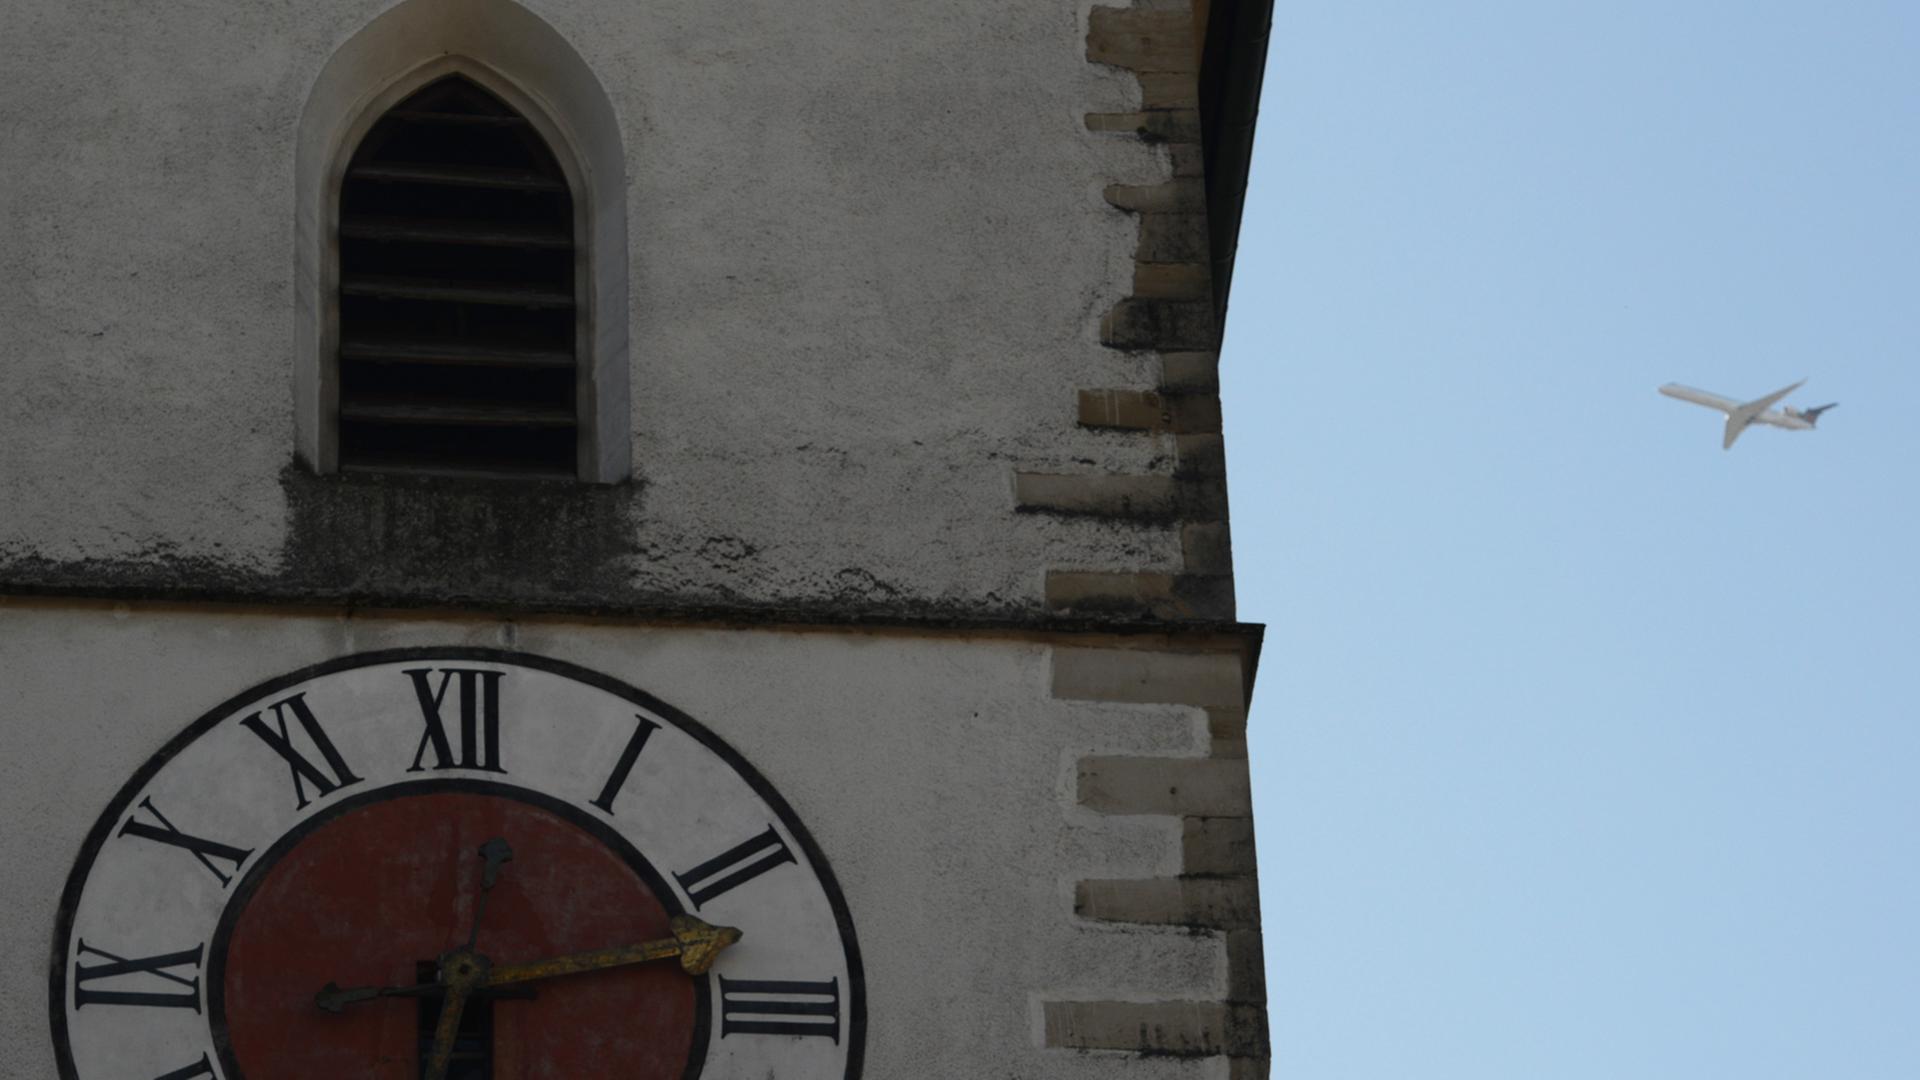 Die Uhr eines Kirchturms in Großaufnahme, daneben weit hinten ein Flugzeug im Landeanflug vor blauem Himmel.